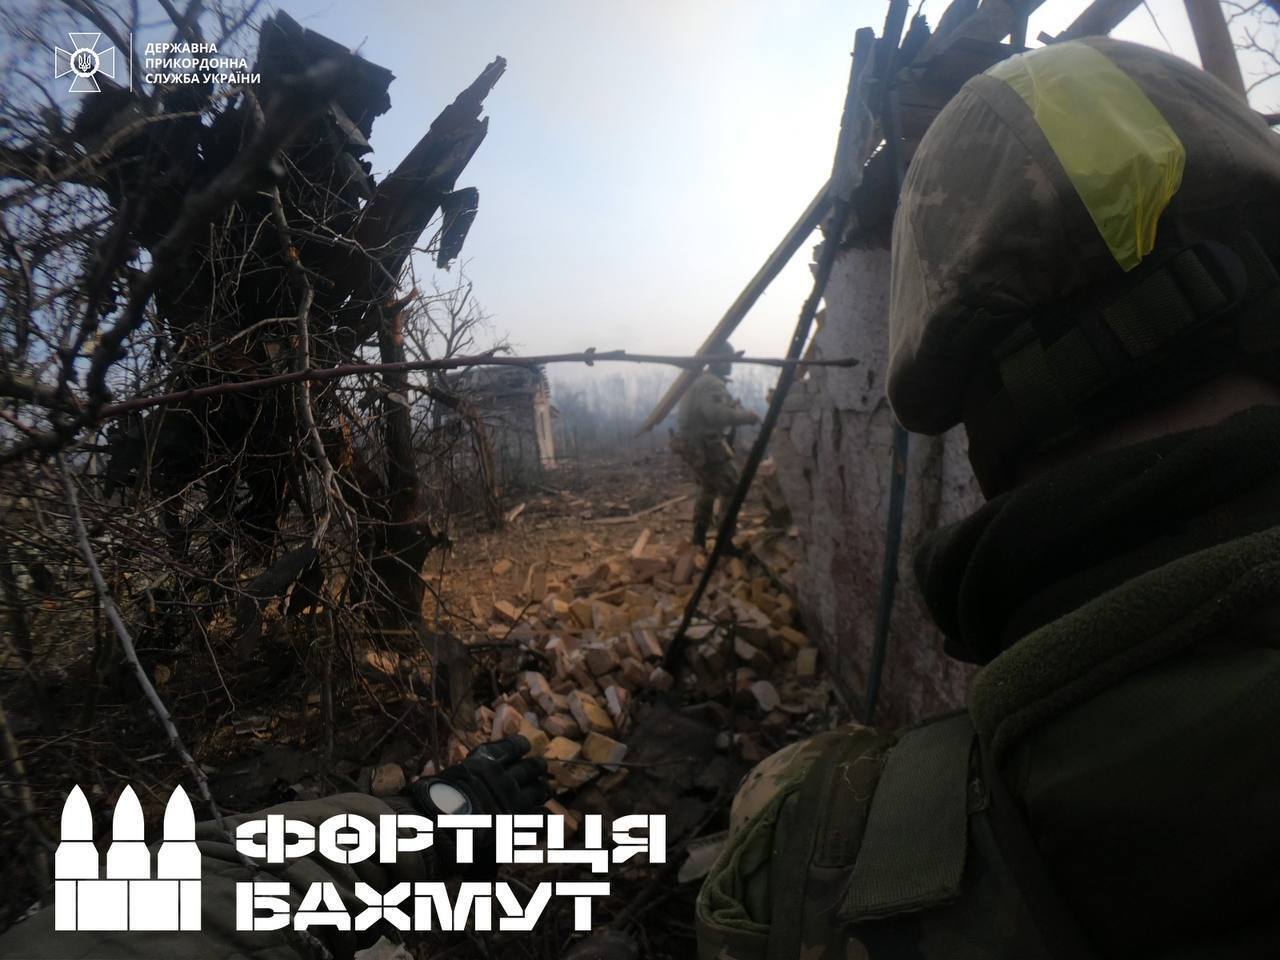 Отступили с поля боя с "успехами": украинские пограничники сократили количество "вагнеровцев" в Бахмуте